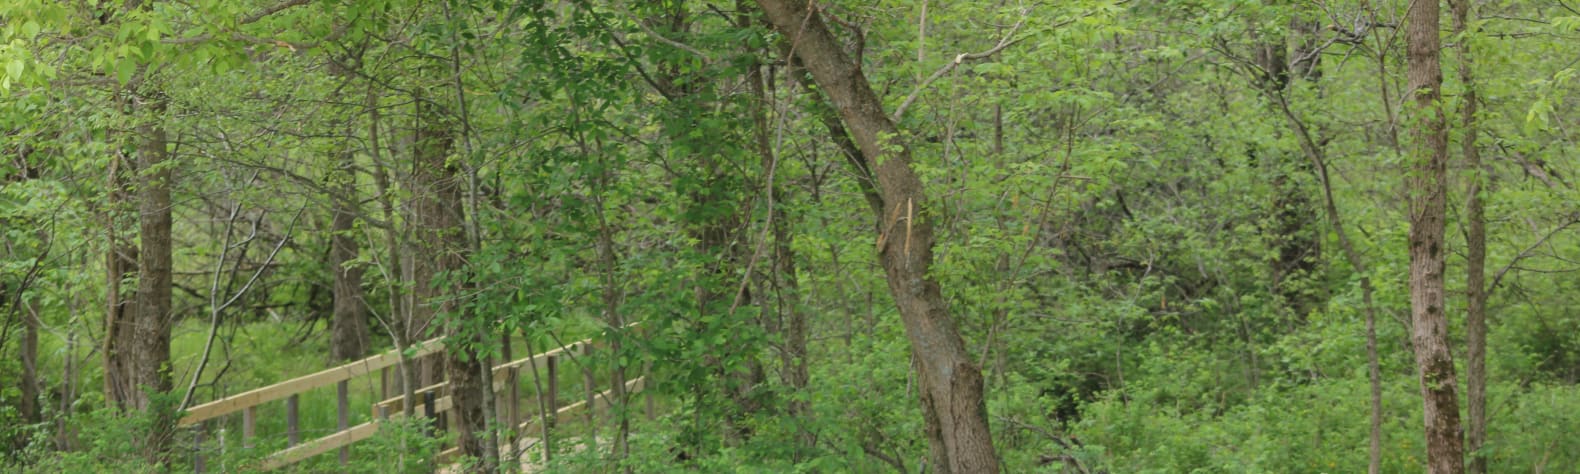 Fangthorn Forest